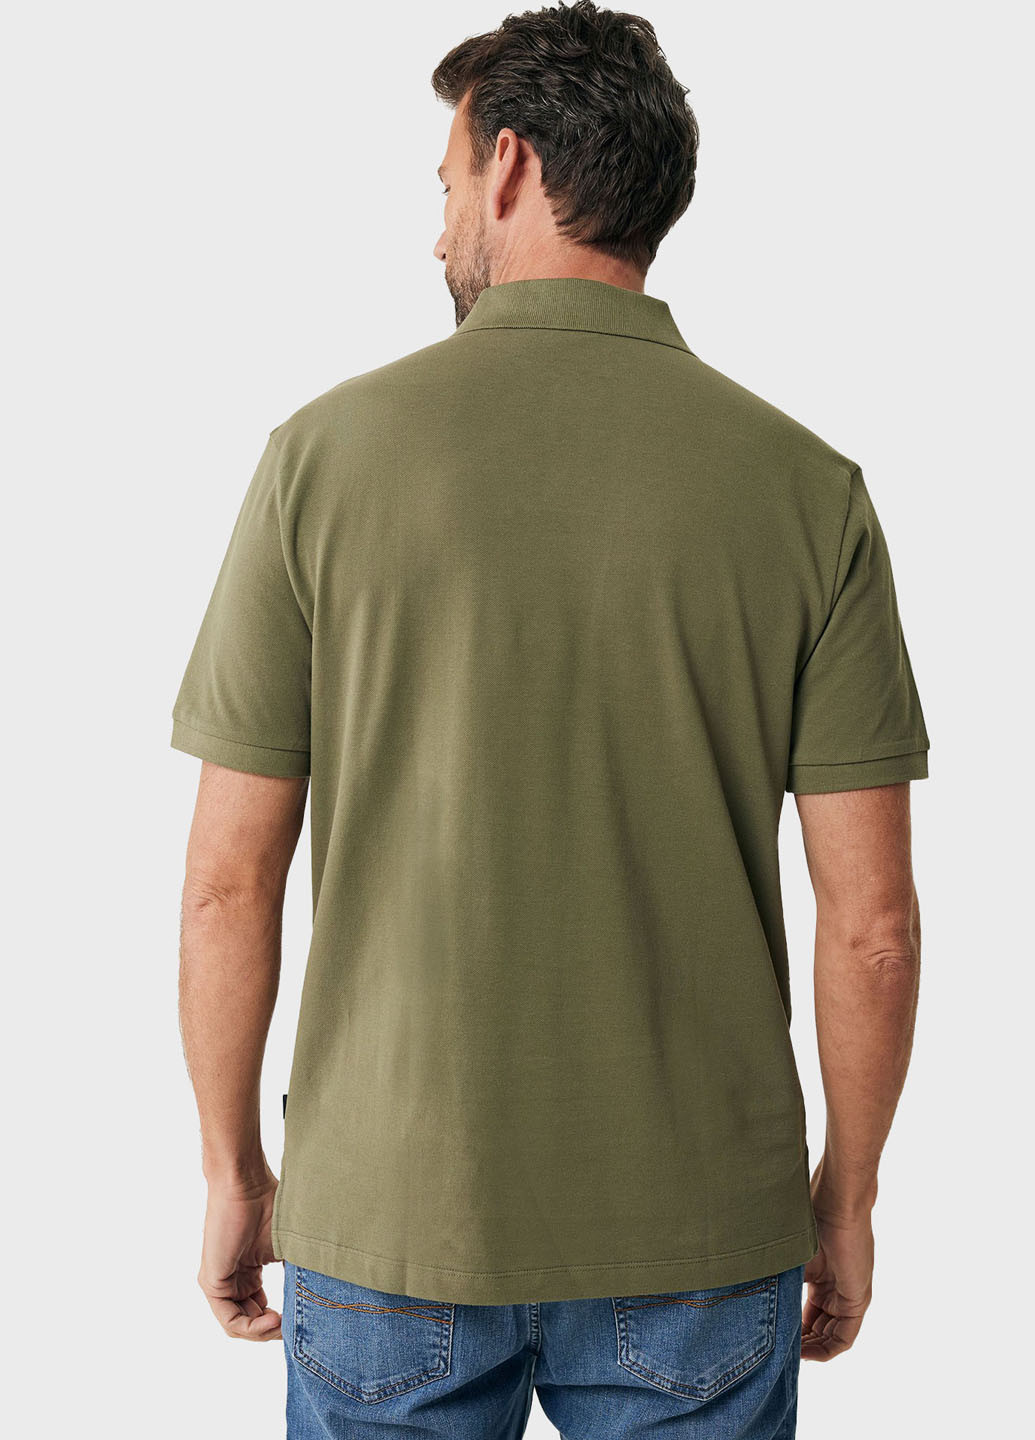 Оливковая футболка-поло для мужчин Mexx с логотипом